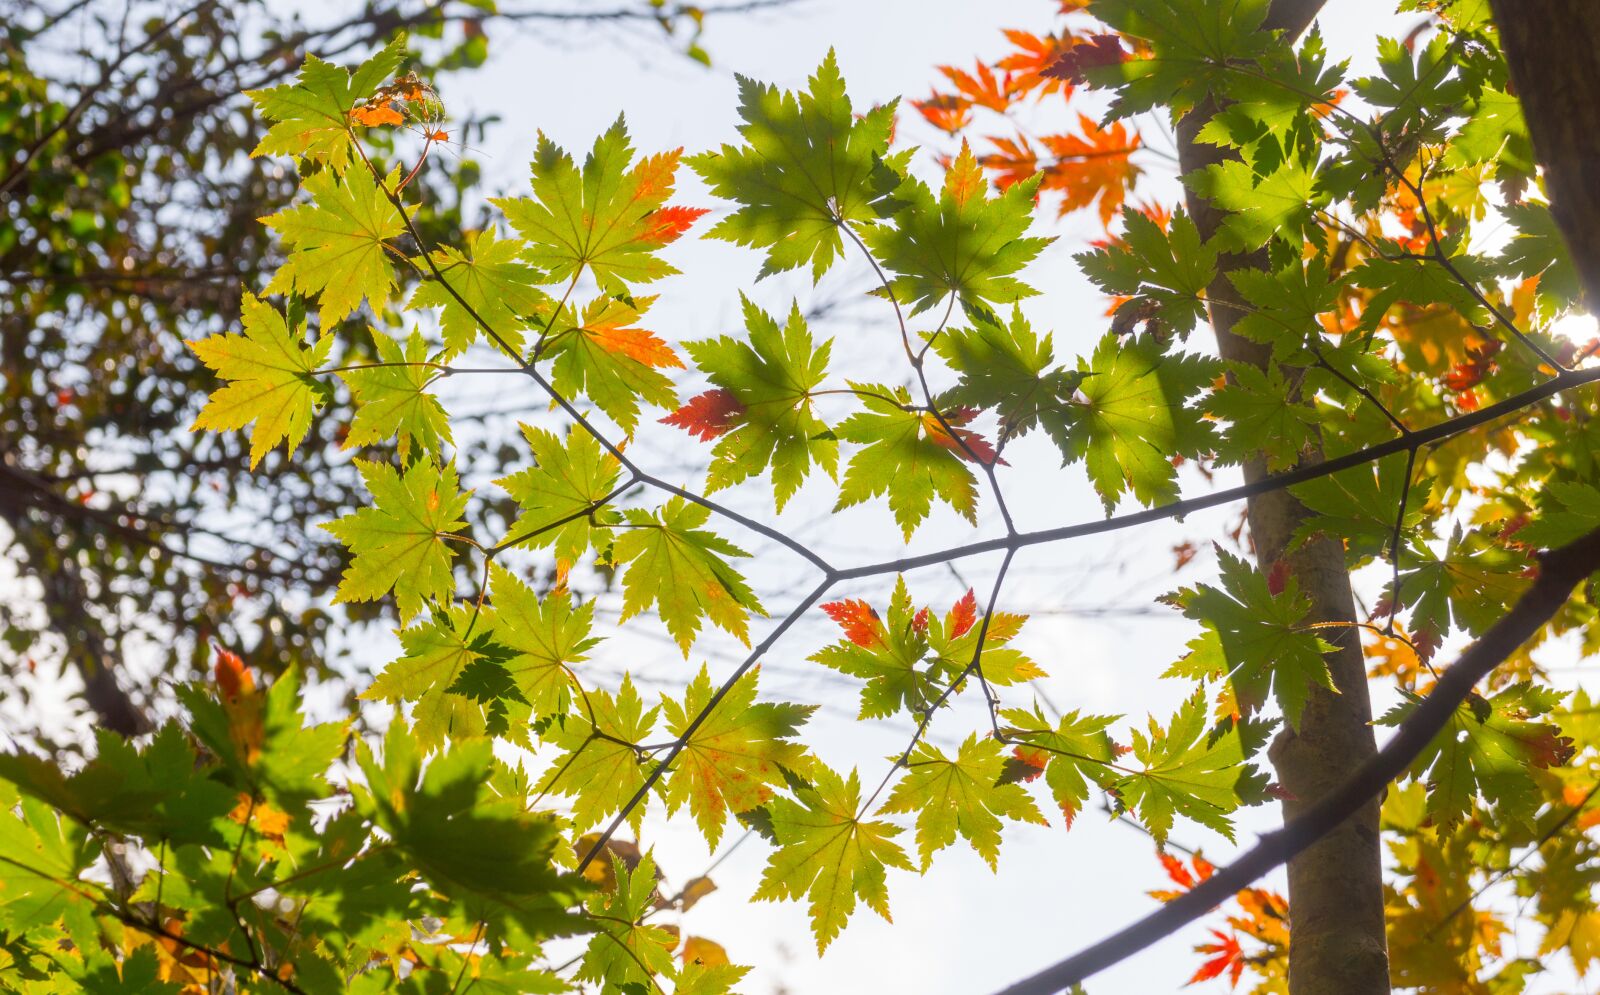 Sony Alpha NEX-5N sample photo. Autumn leaves, autumn, the photography